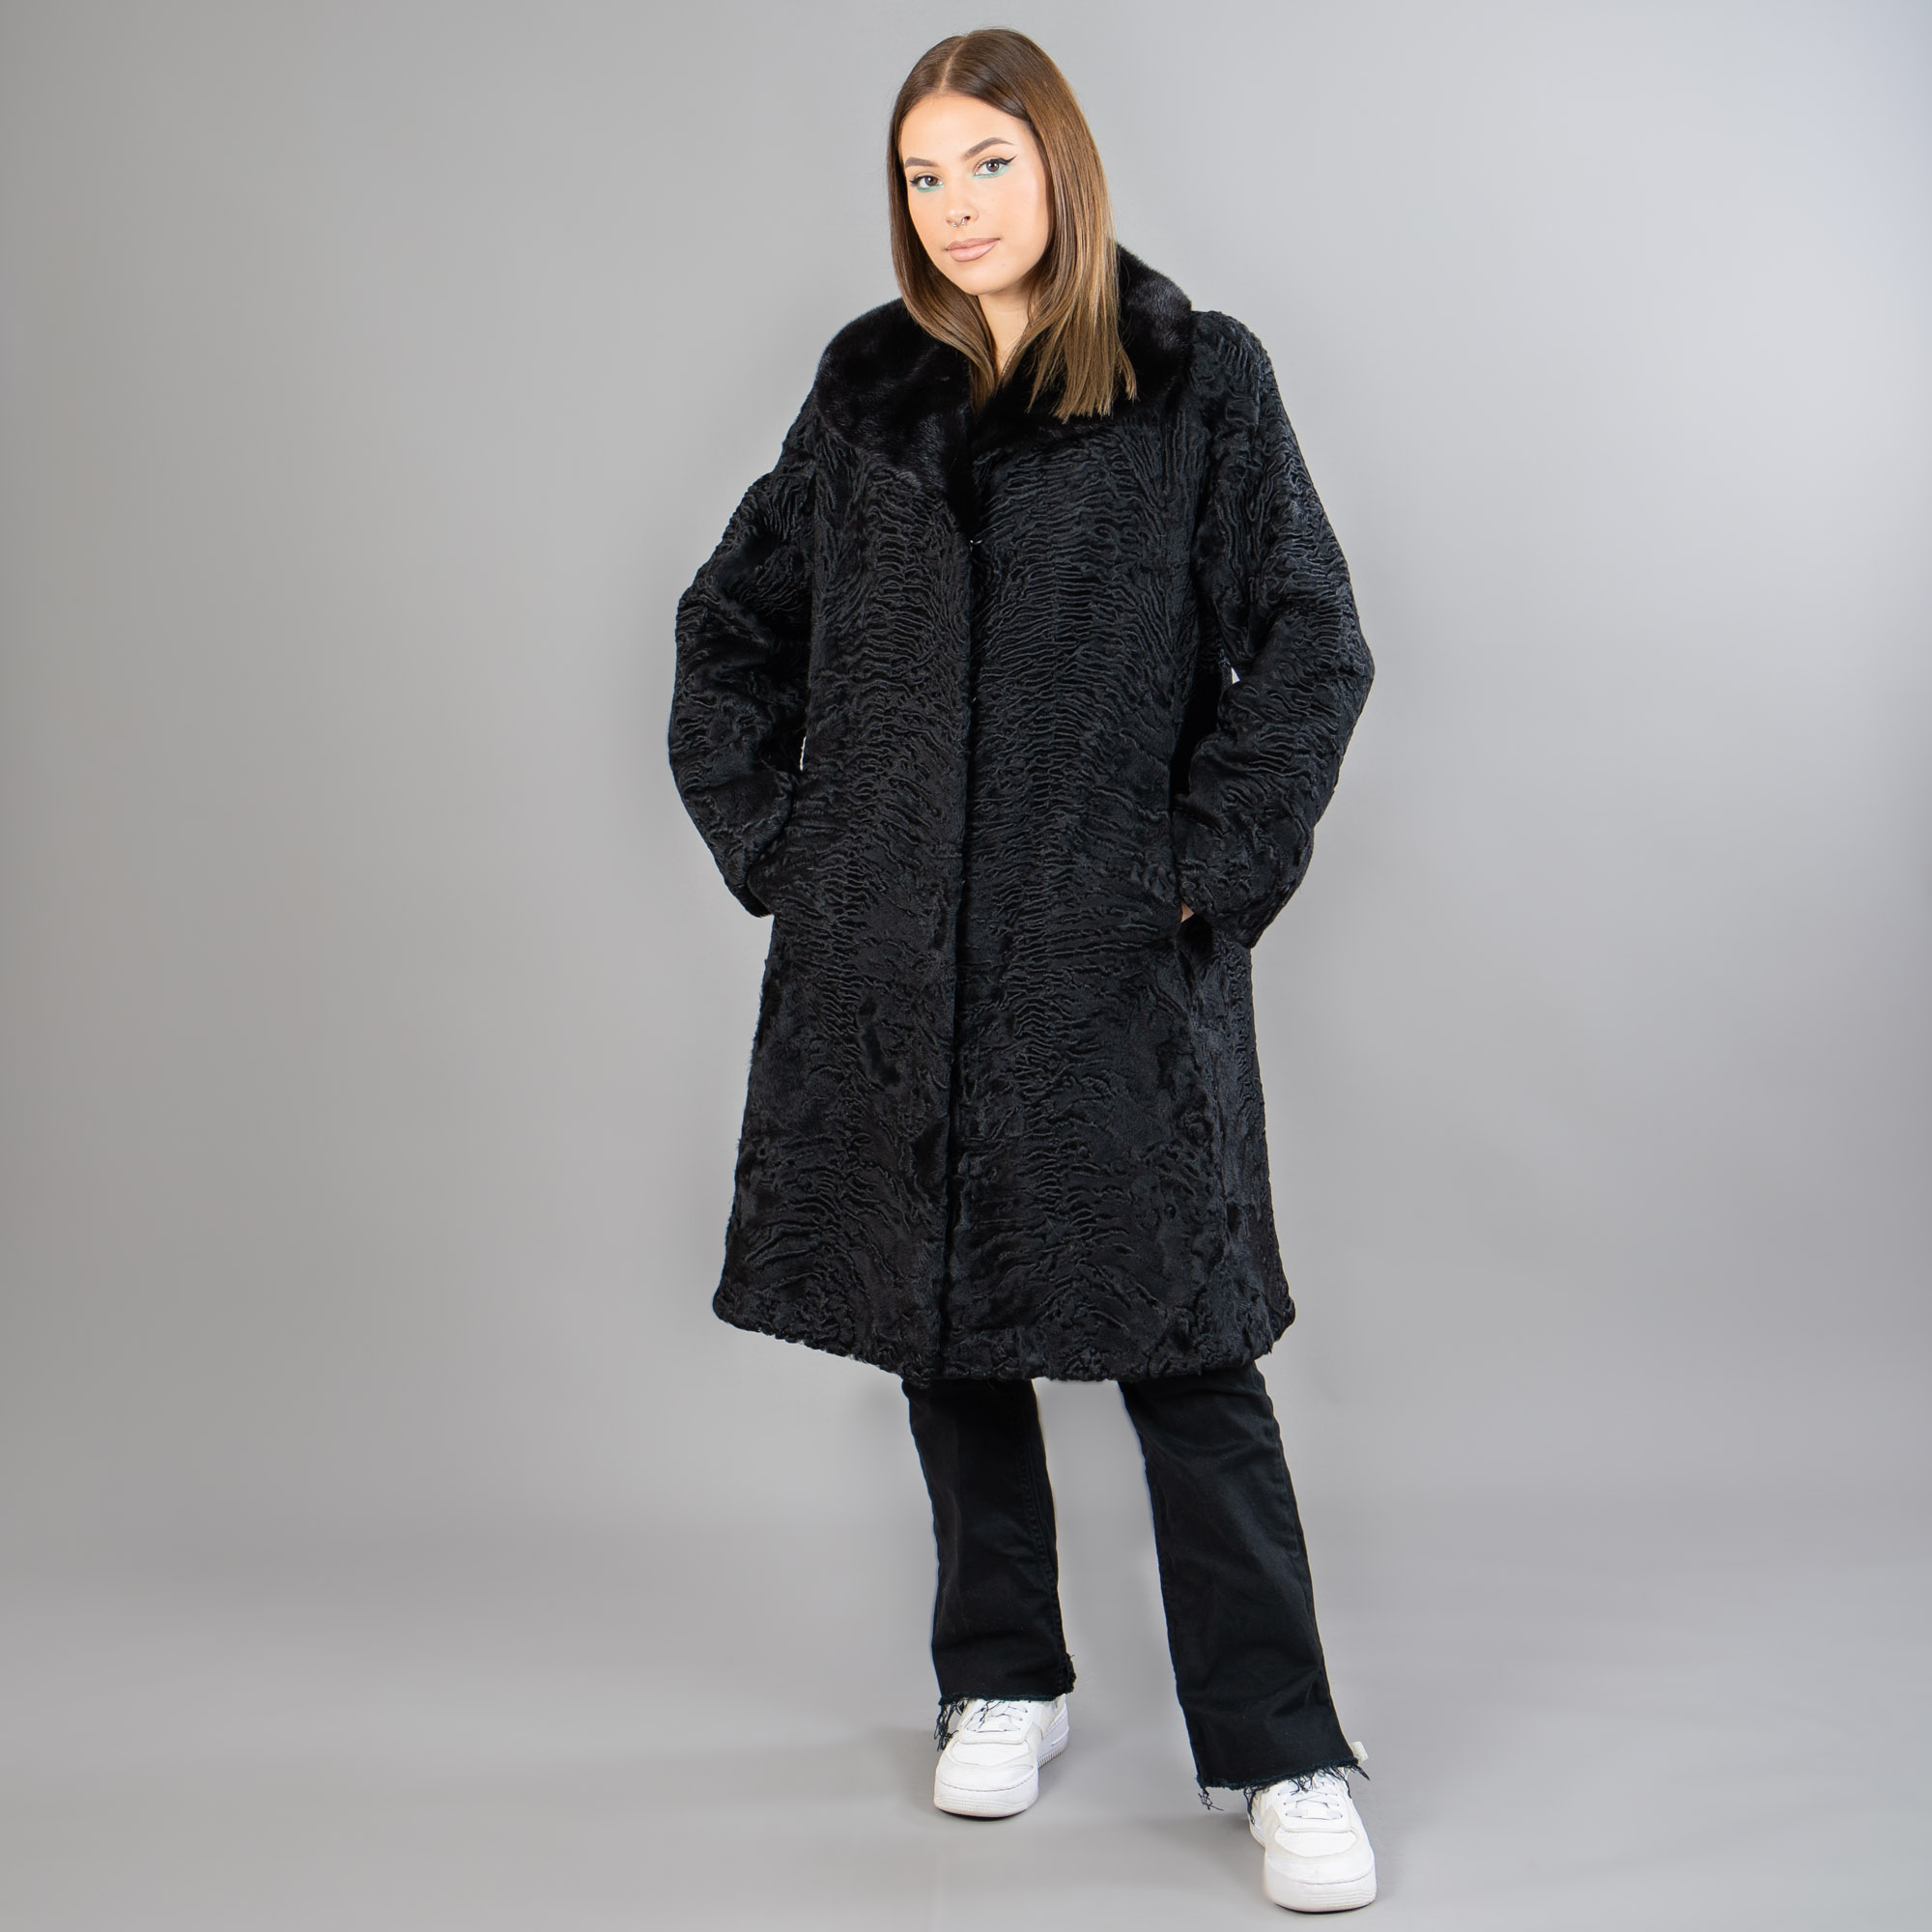 atrakhan and mink fur coat in black color